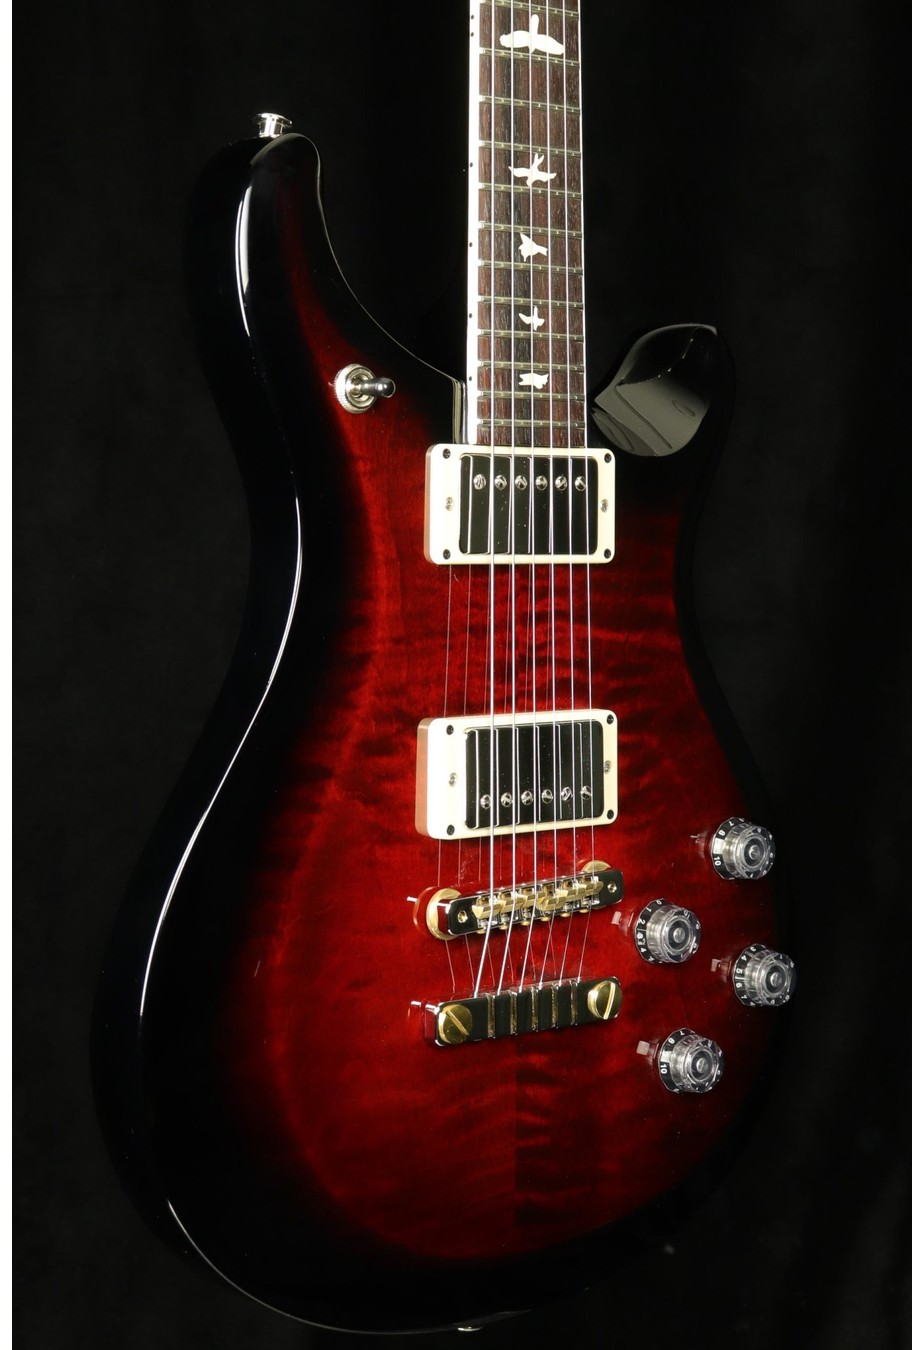 PRS Guitars PRS S2 McCarty 594 - Fire Red w/ Black Wrap Burst